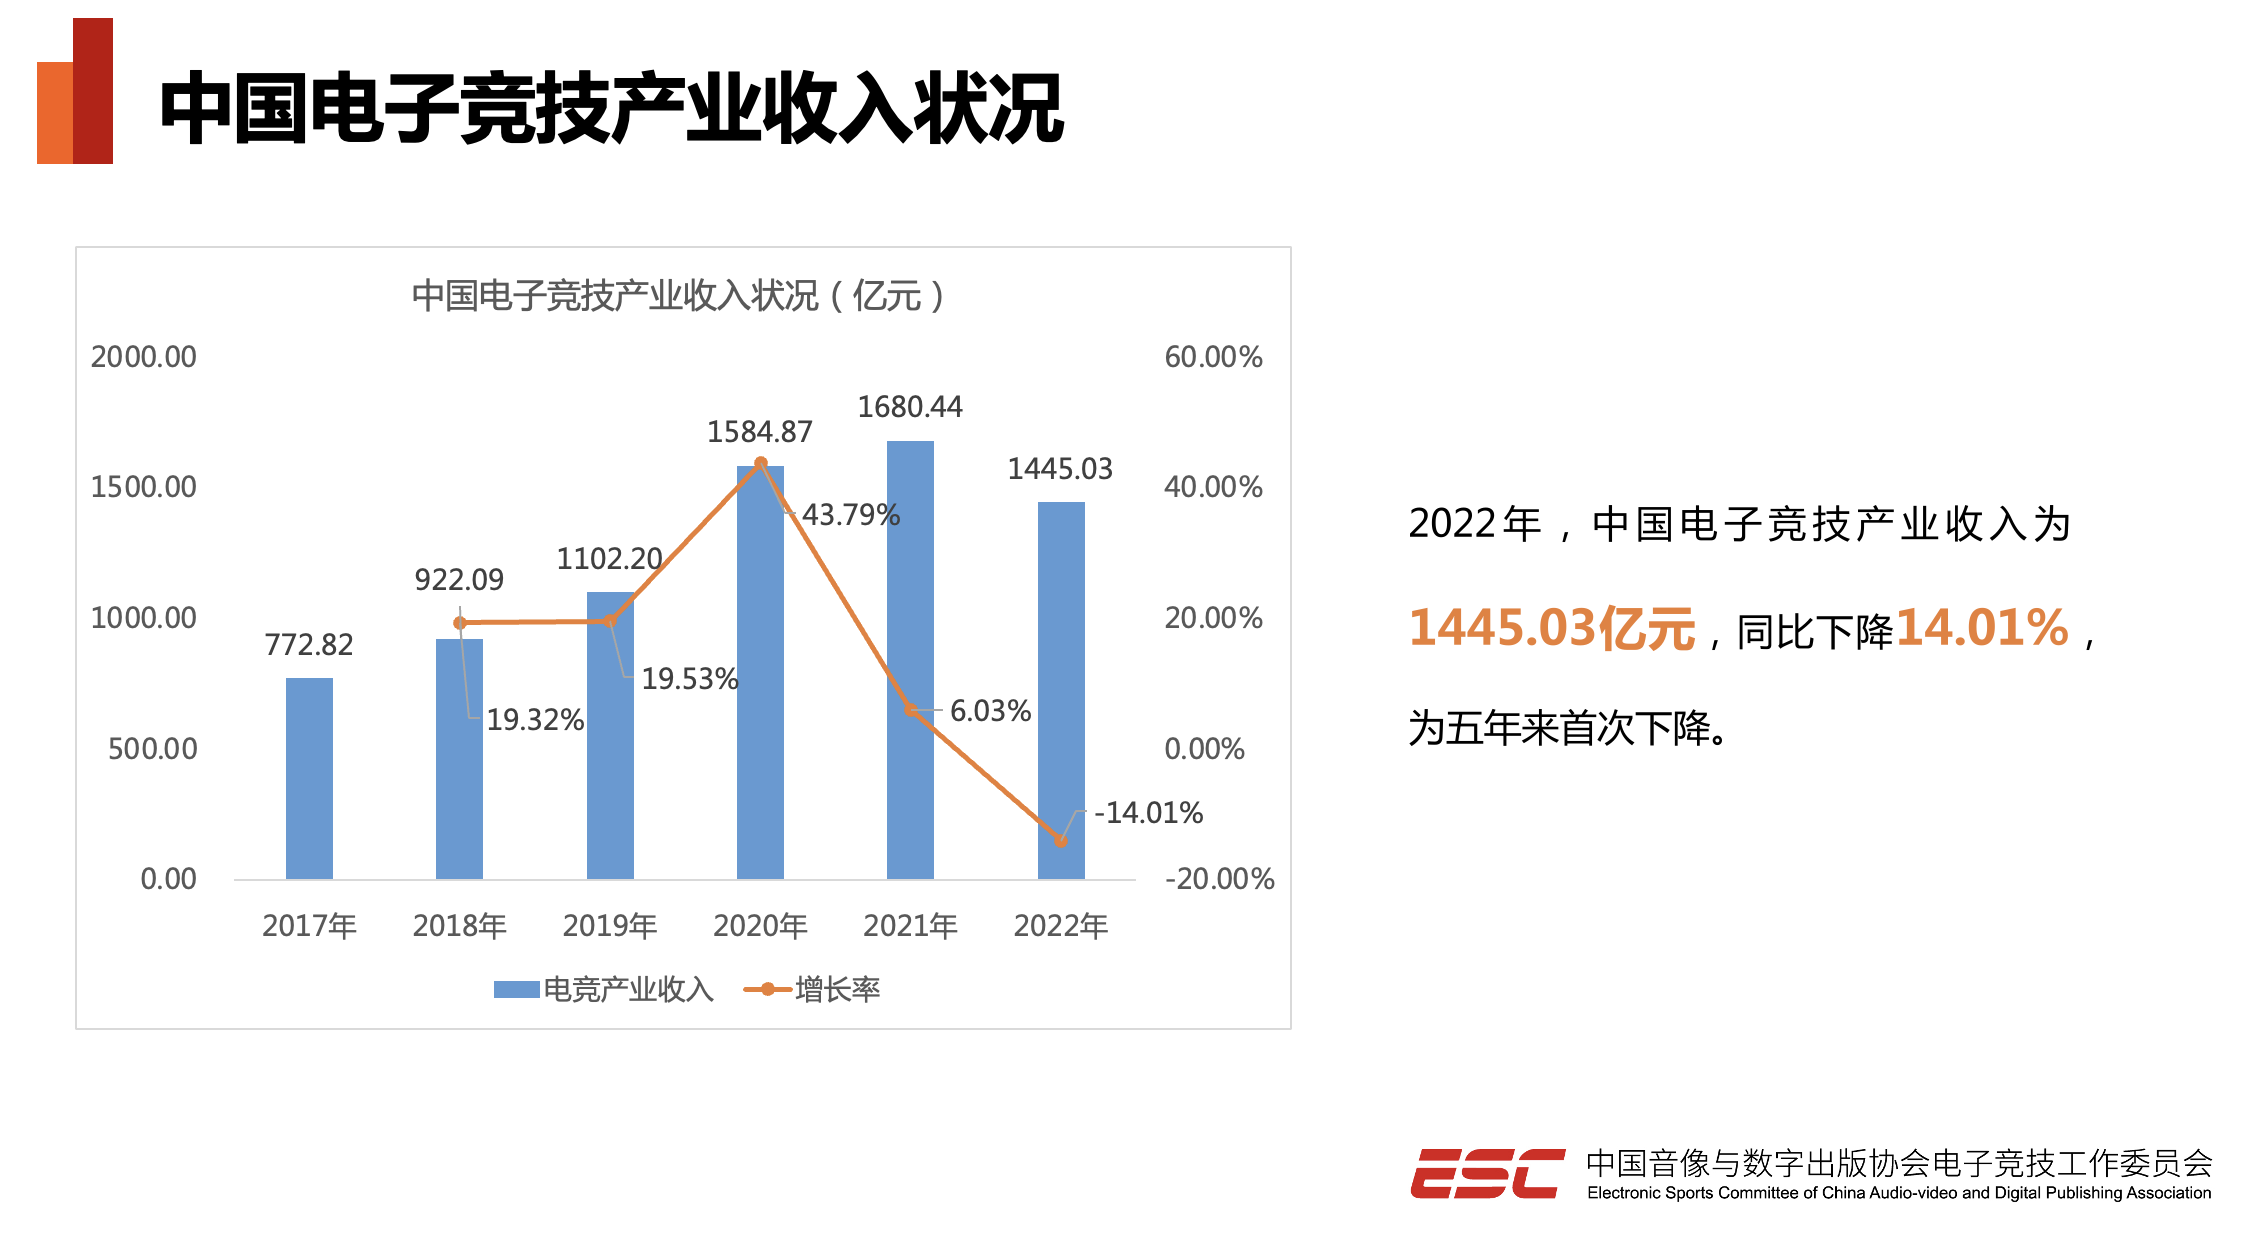 《2022年中国电竞产业报告》：产业收入1445.03亿元